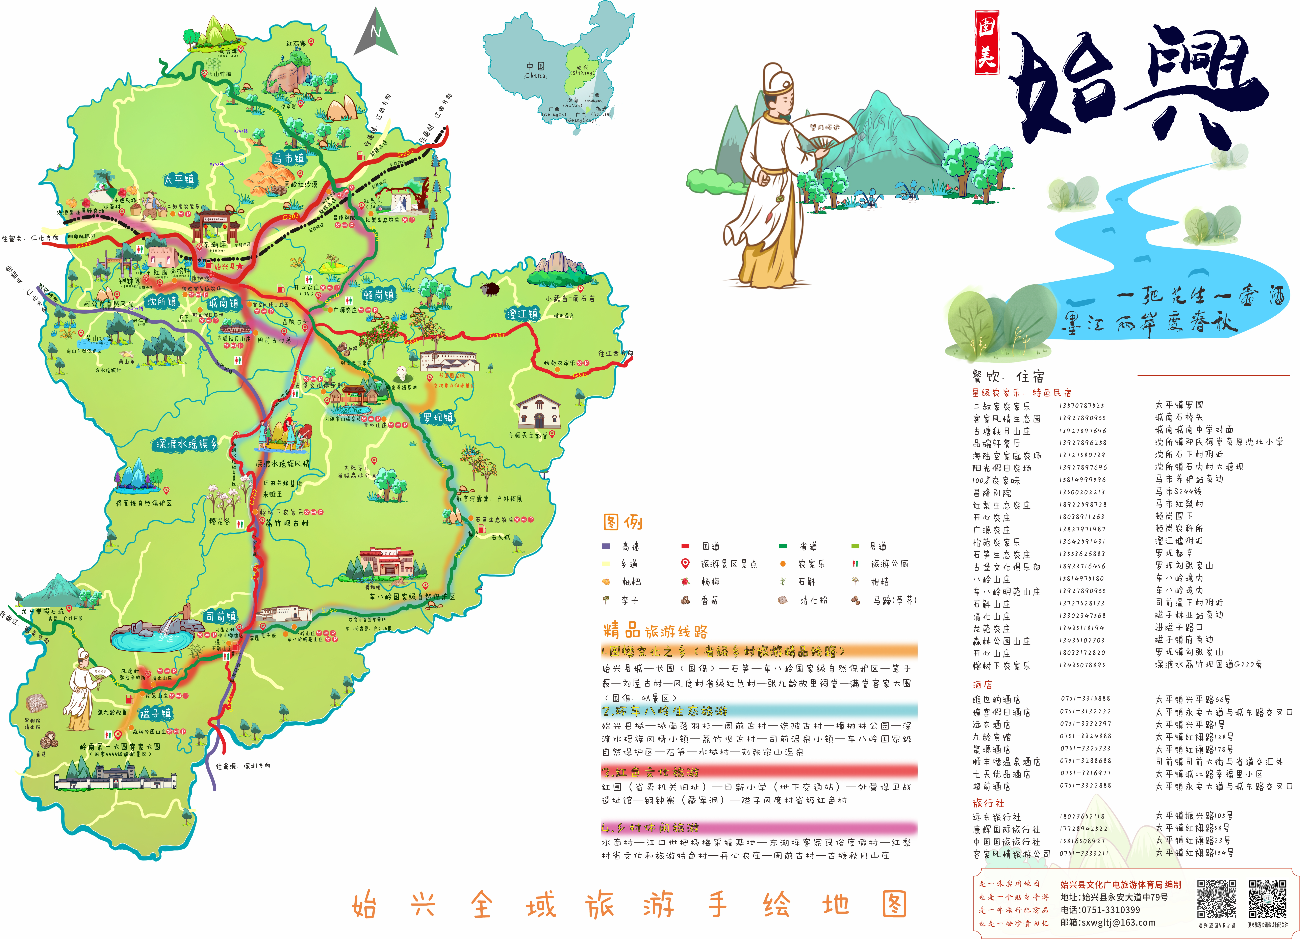 始兴县全域旅游手绘地图